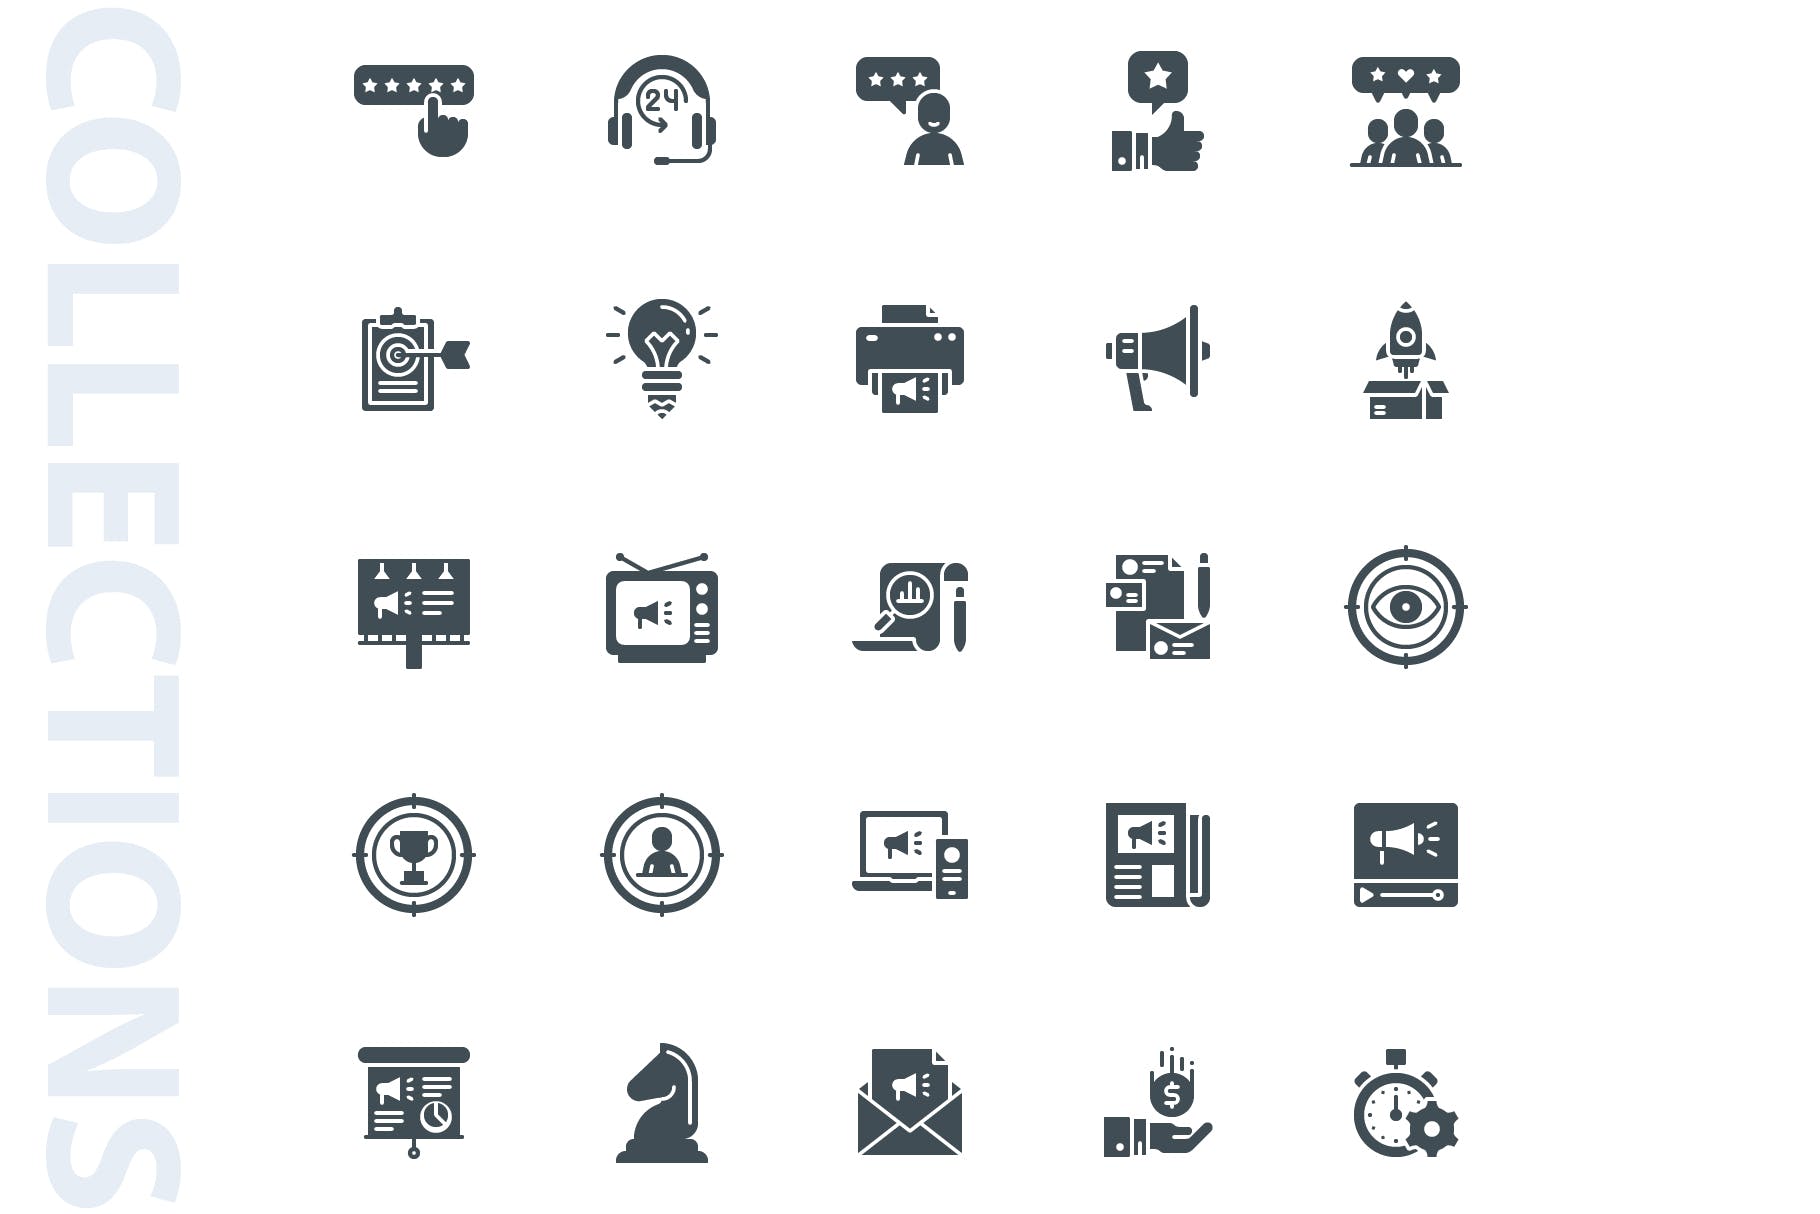 25枚市场营销主题符号蚂蚁素材精选图标 Marketing Glyph Icons插图(3)